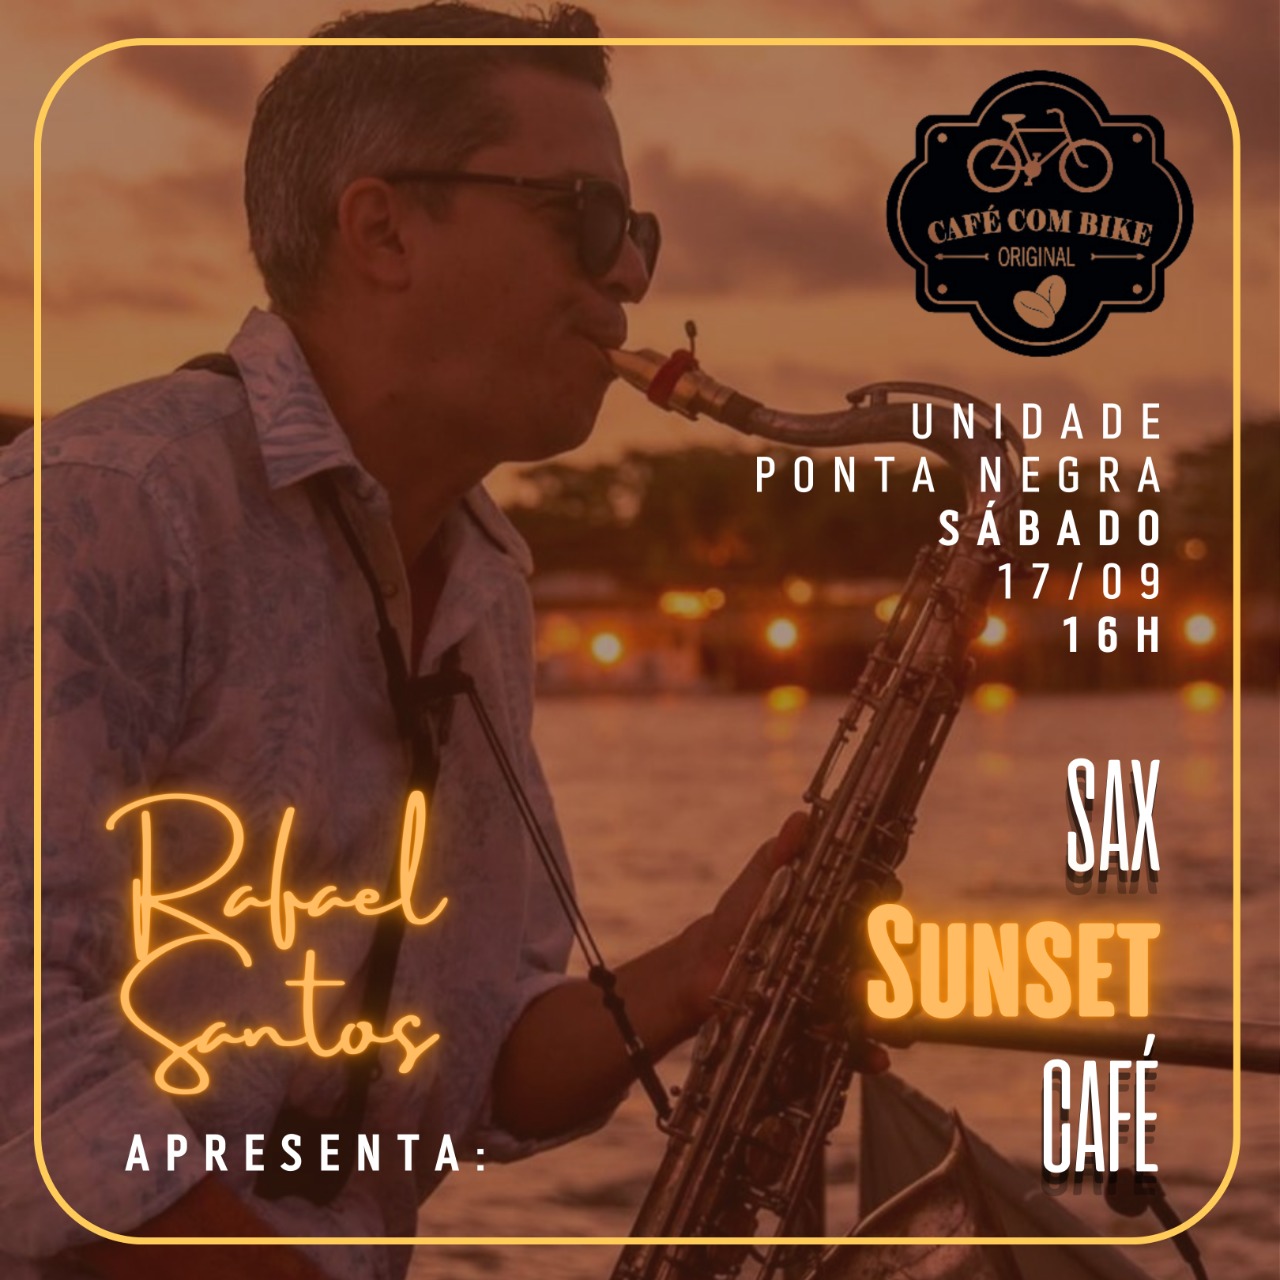 Café com Bike estreia projeto Sax Sunset Café com o músico Rafael Santos